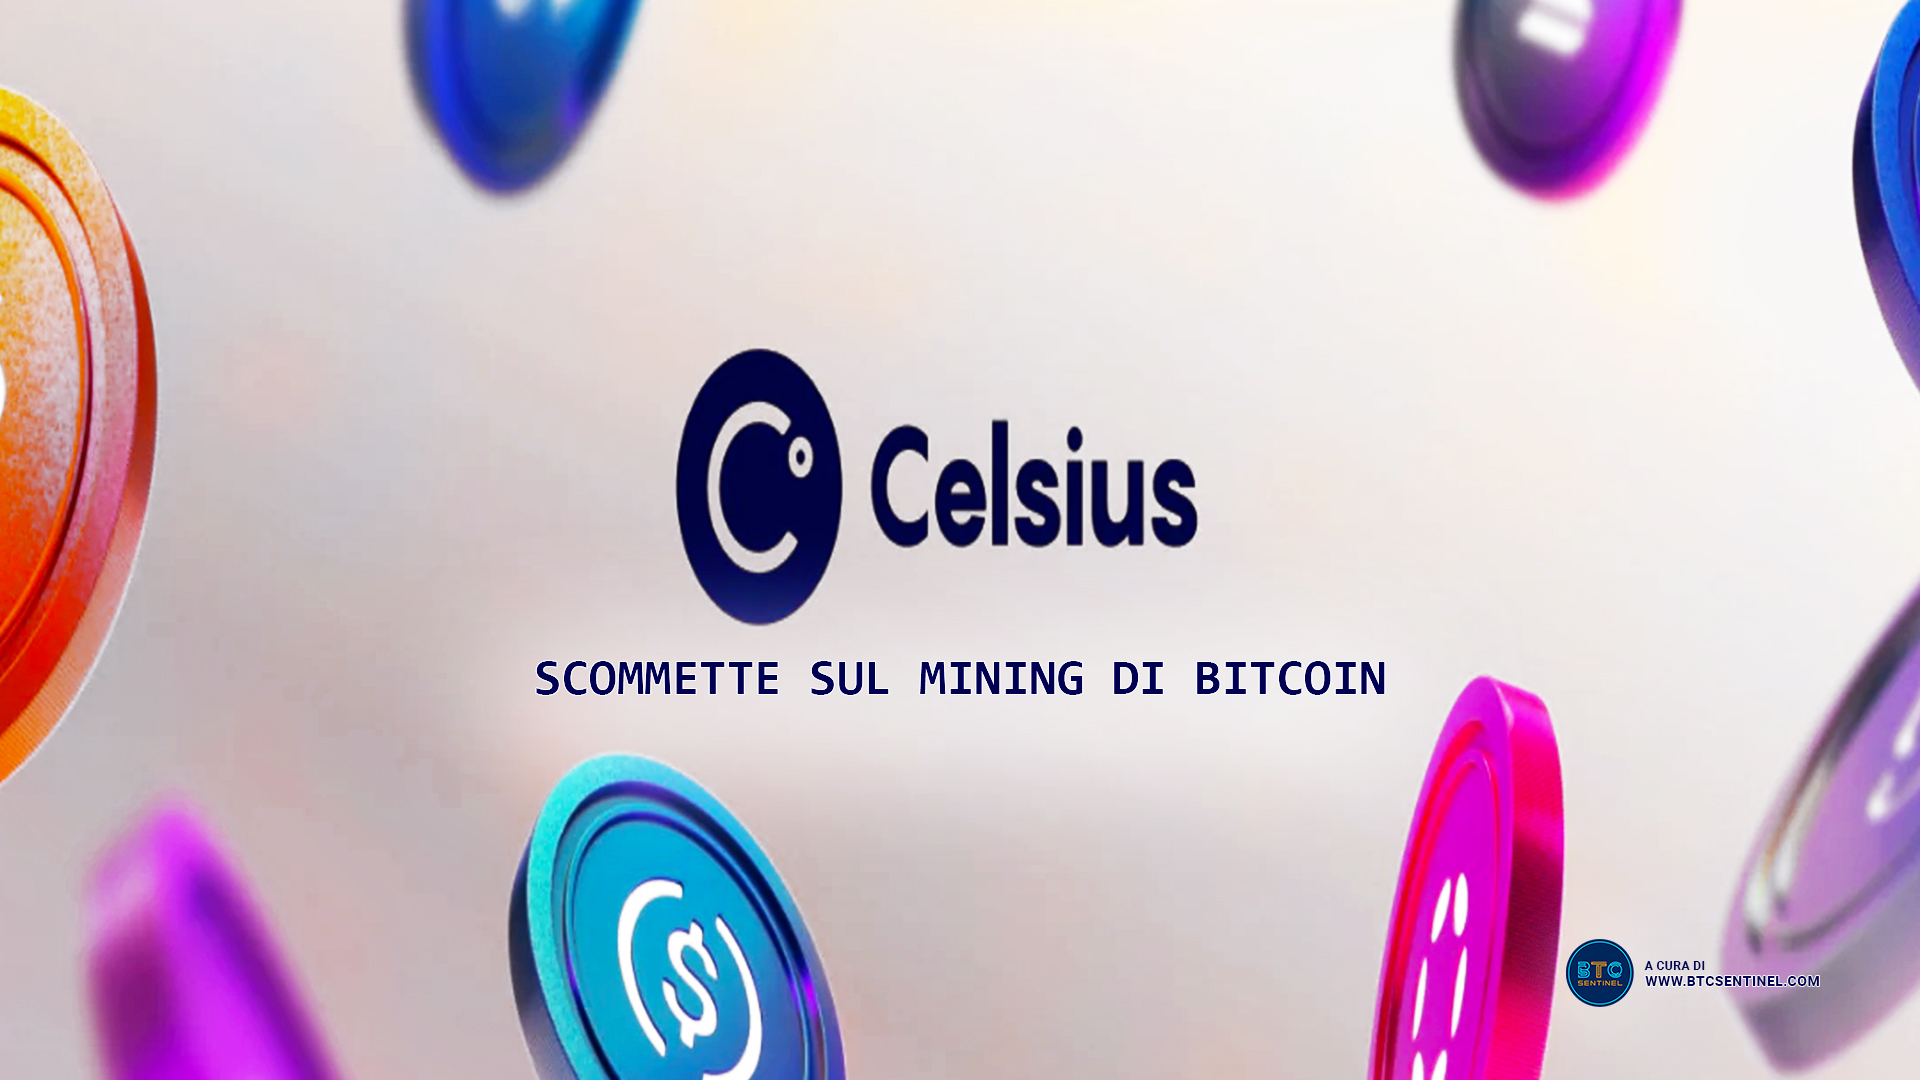 Celsius scommette sul mining di Bitcoin per ristrutturare la società